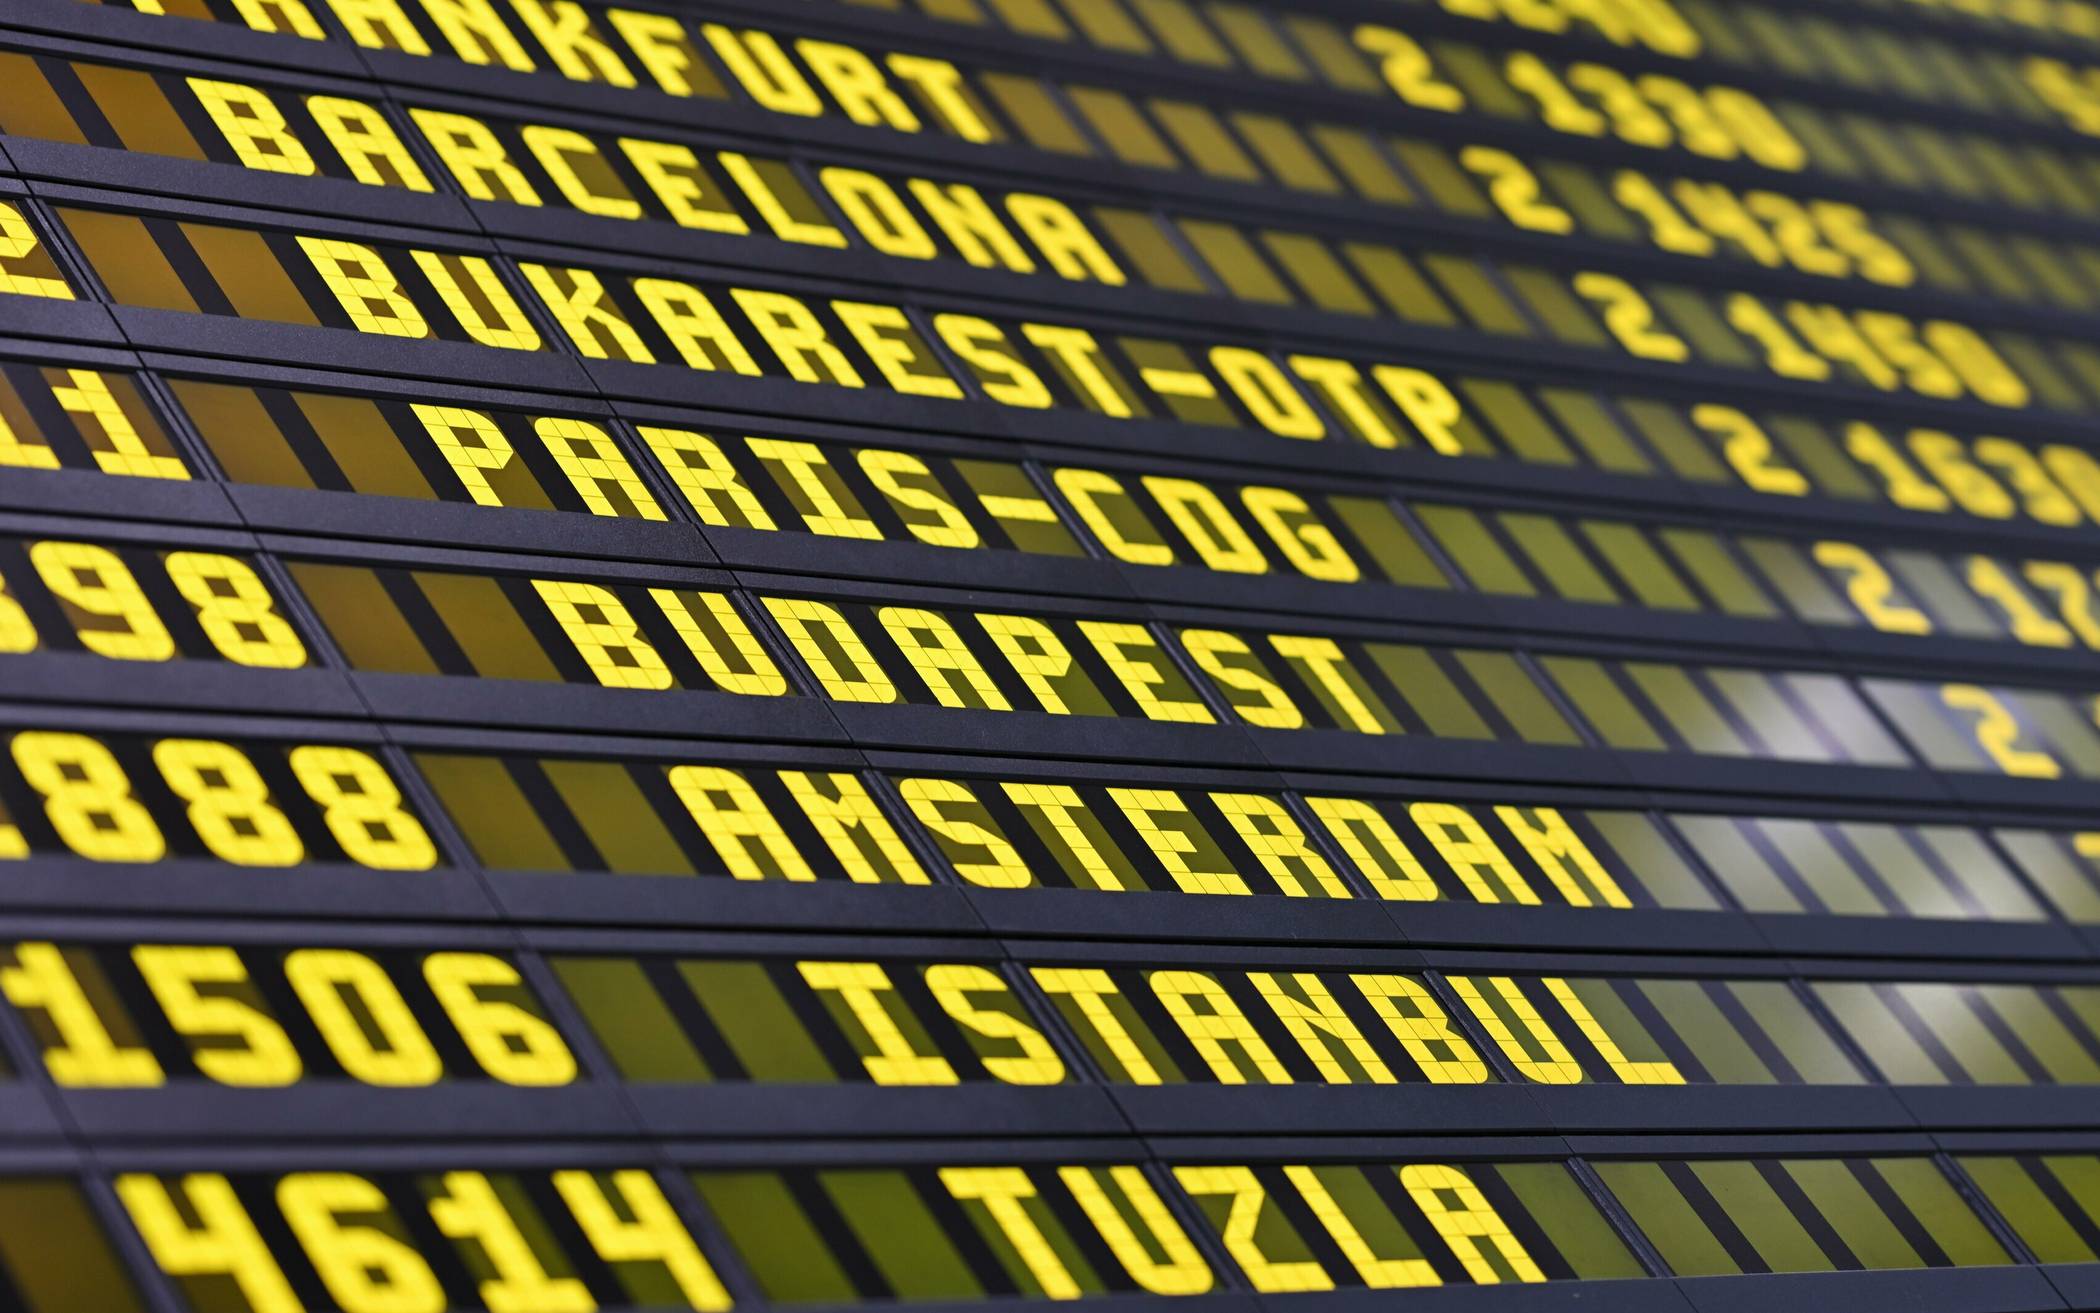 Vom Airport-Chaos betroffen - Fluggastrecht-Experte klärt auf